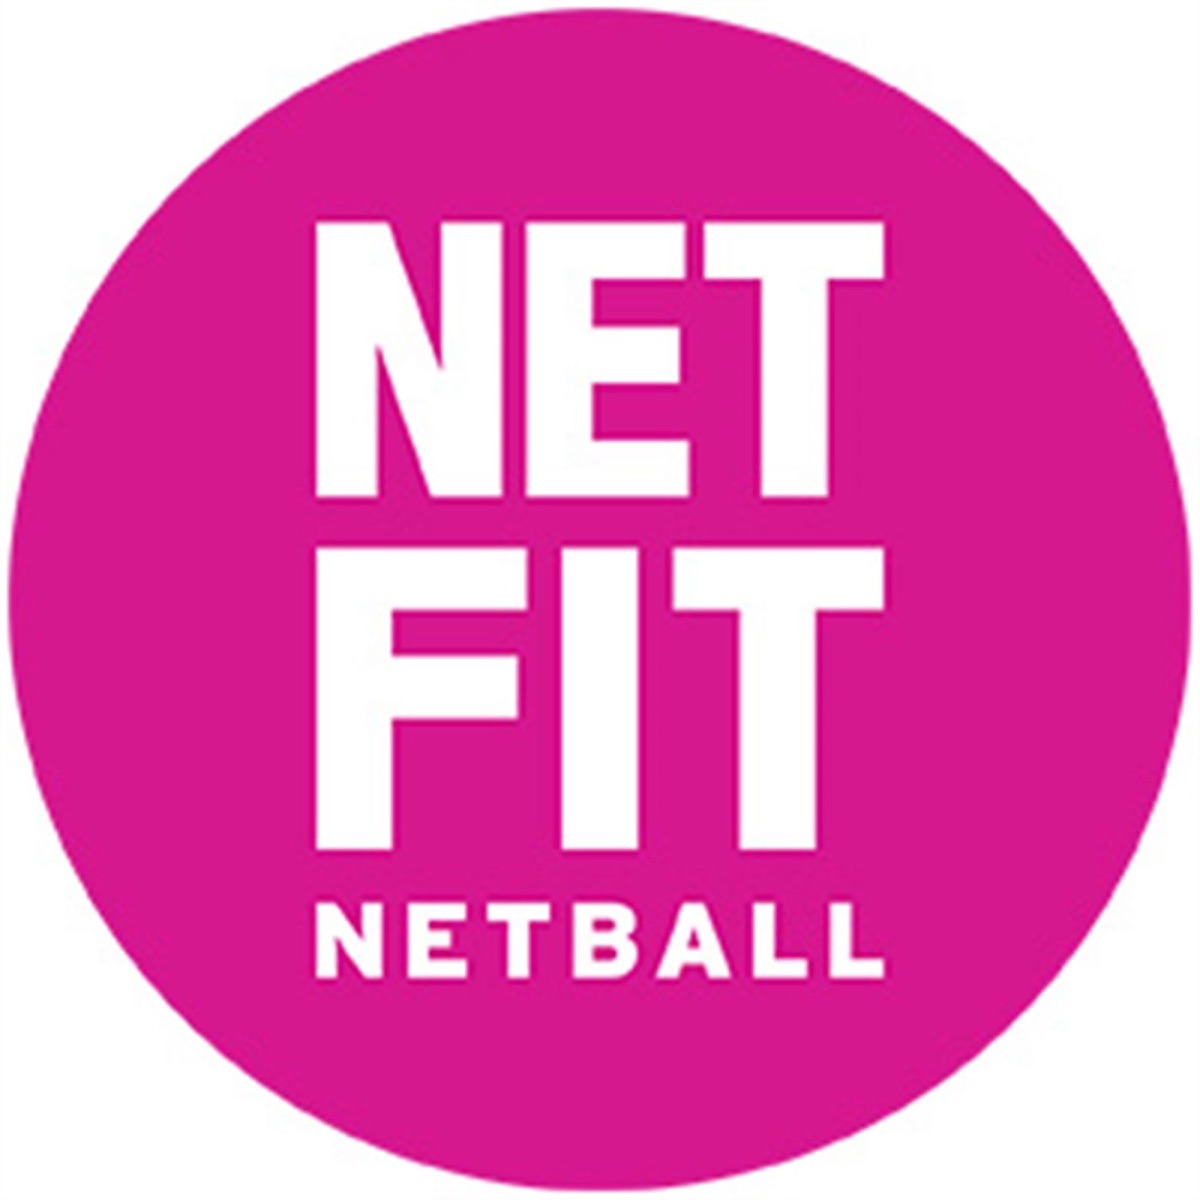 NETFIT Netball - SLAY WITH TAY via the NETFIT App. Taylah